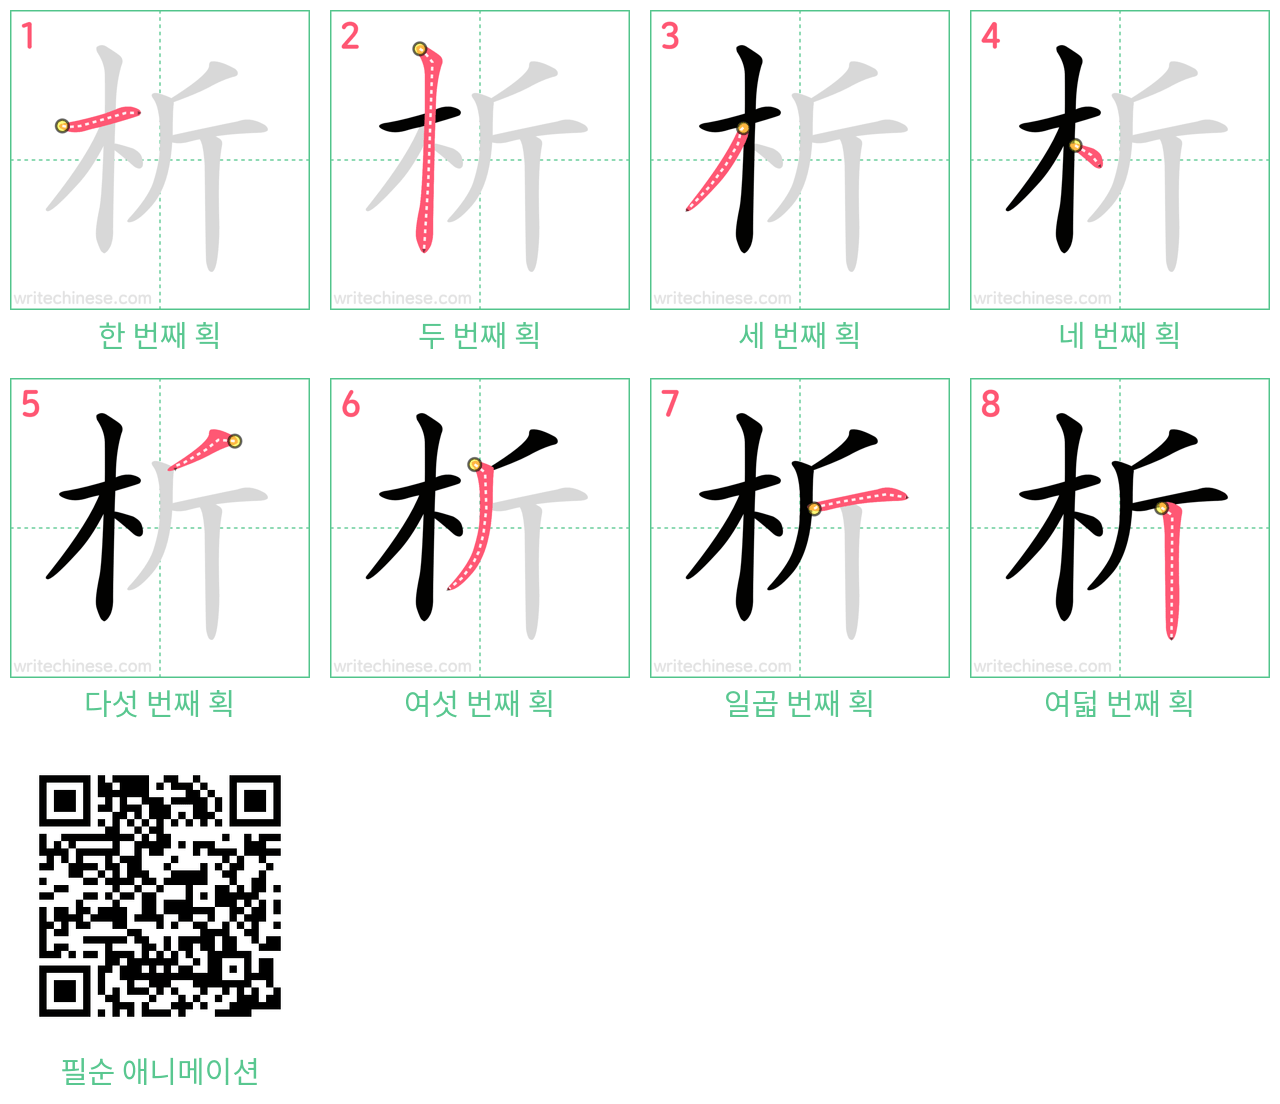 析 step-by-step stroke order diagrams